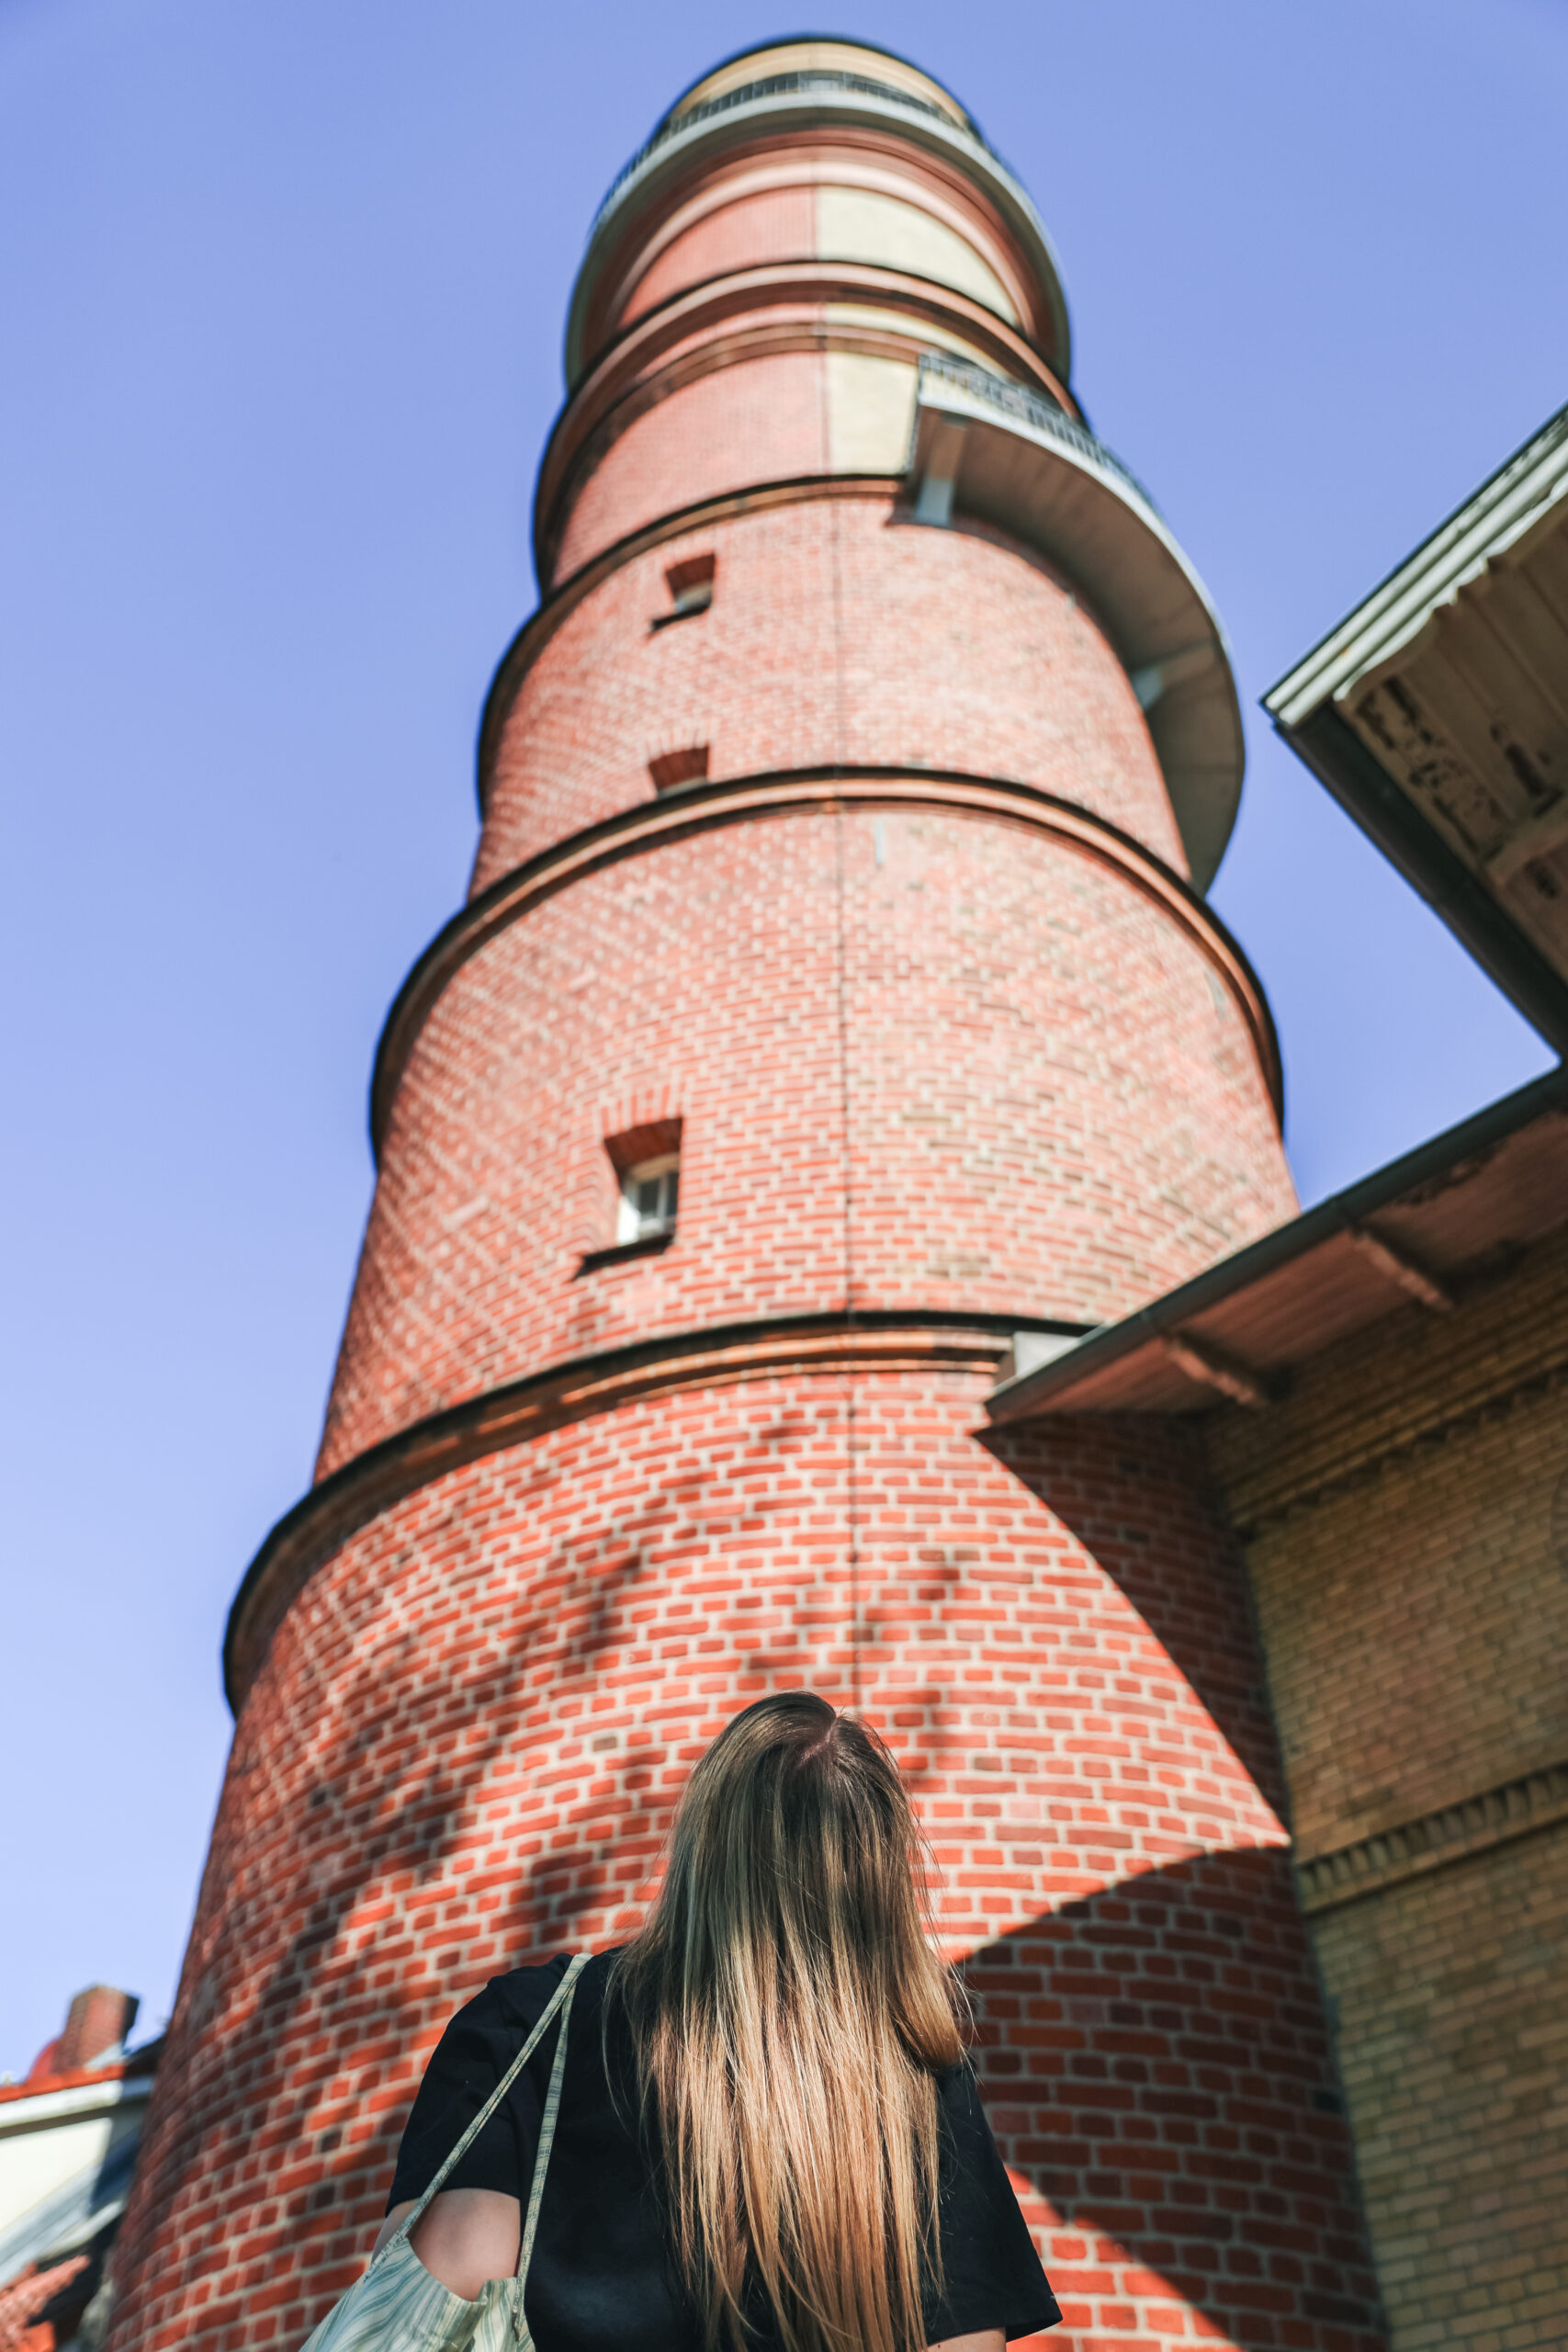 Finja T. blickt hinauf zum ältesten Leuchtturm Deutschlands als erster Tipp für einen Ausflug nach Travemünde